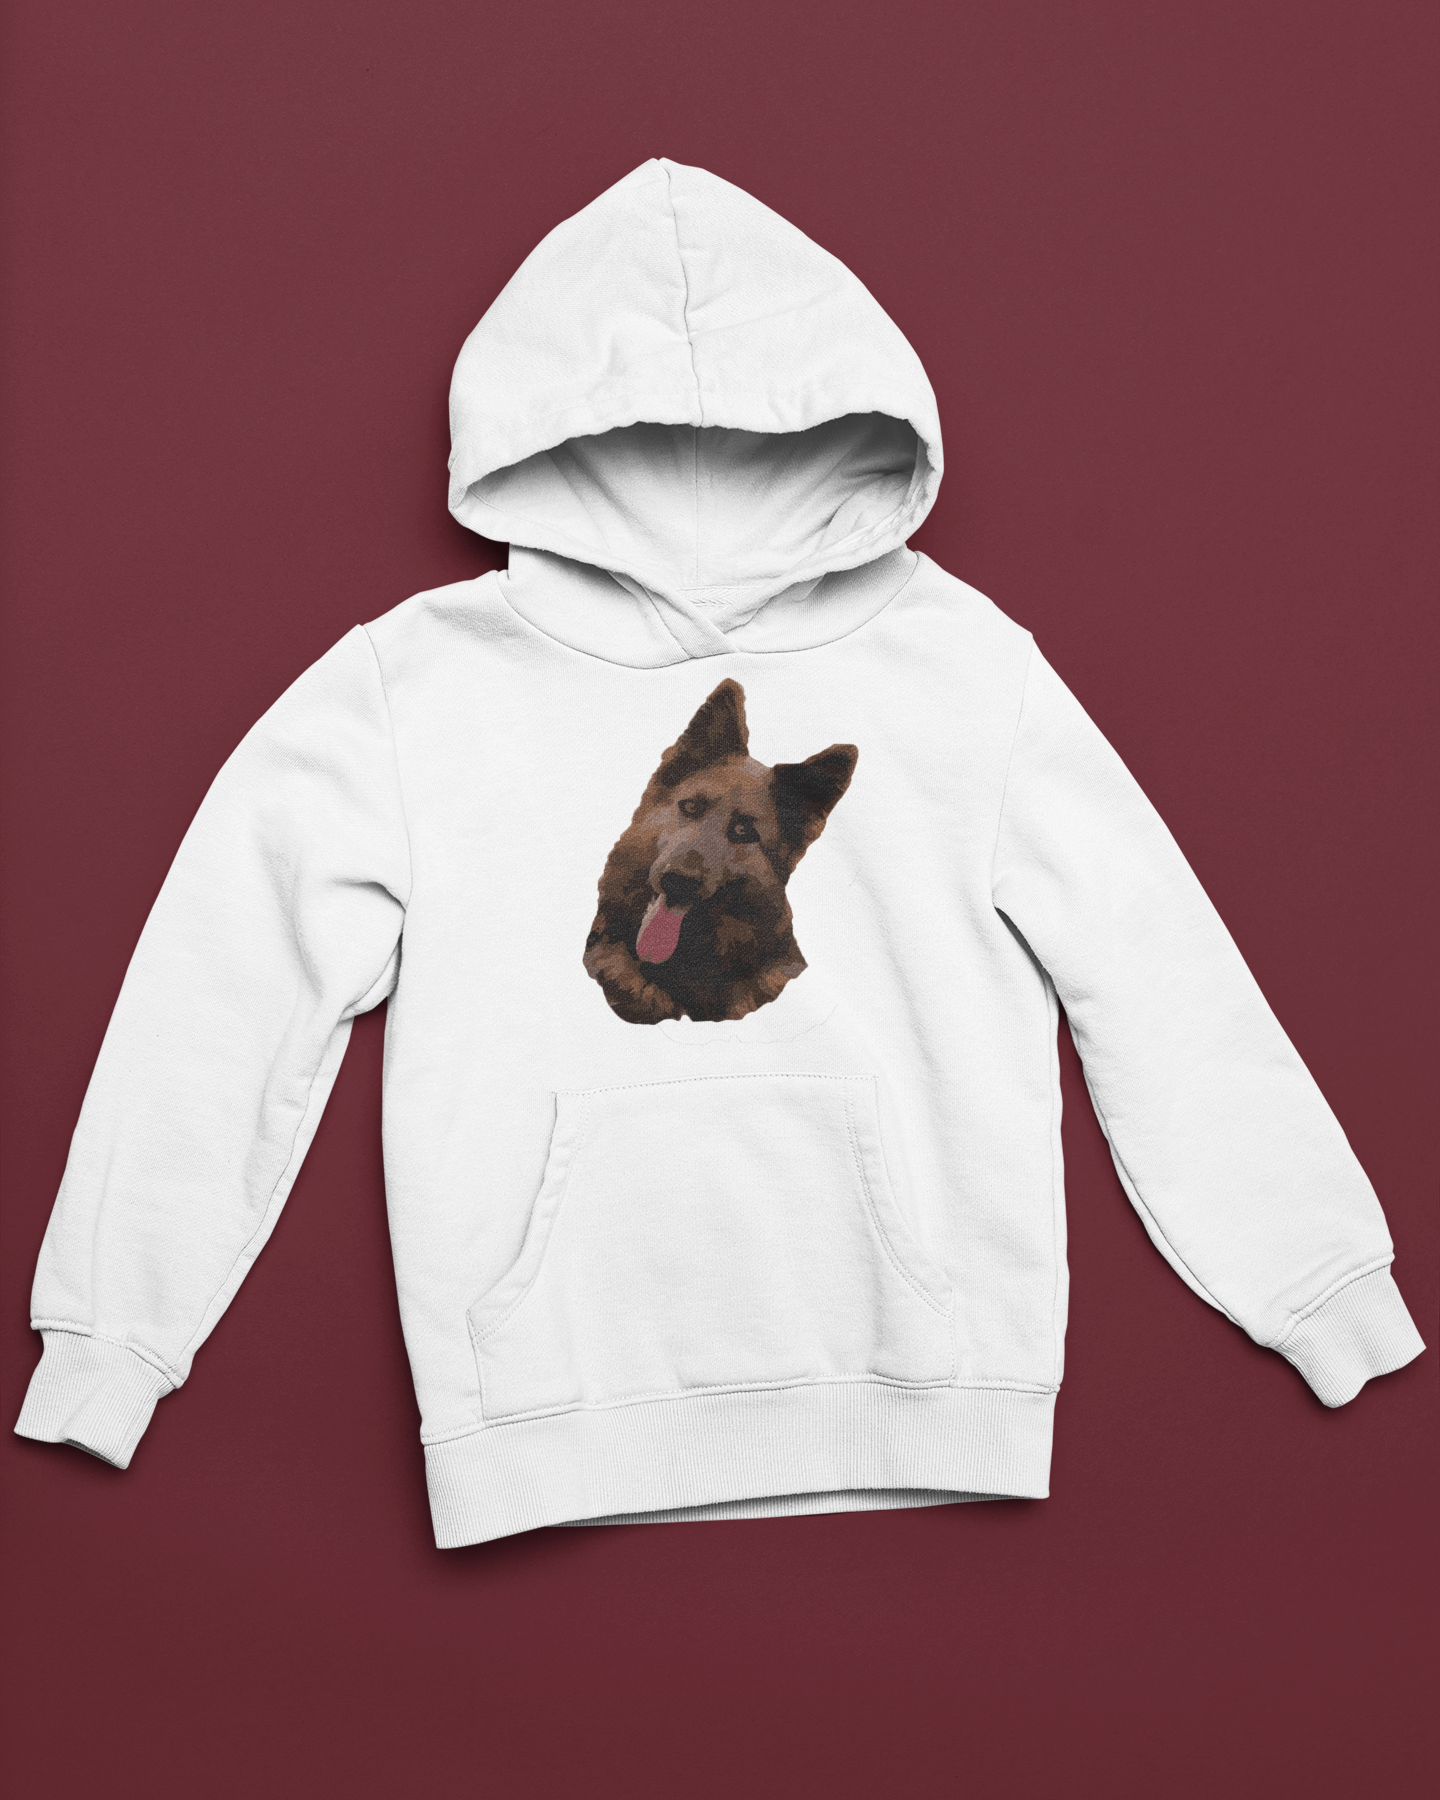 Personalised Pet Image T-Shirt, Tote or Hoodie